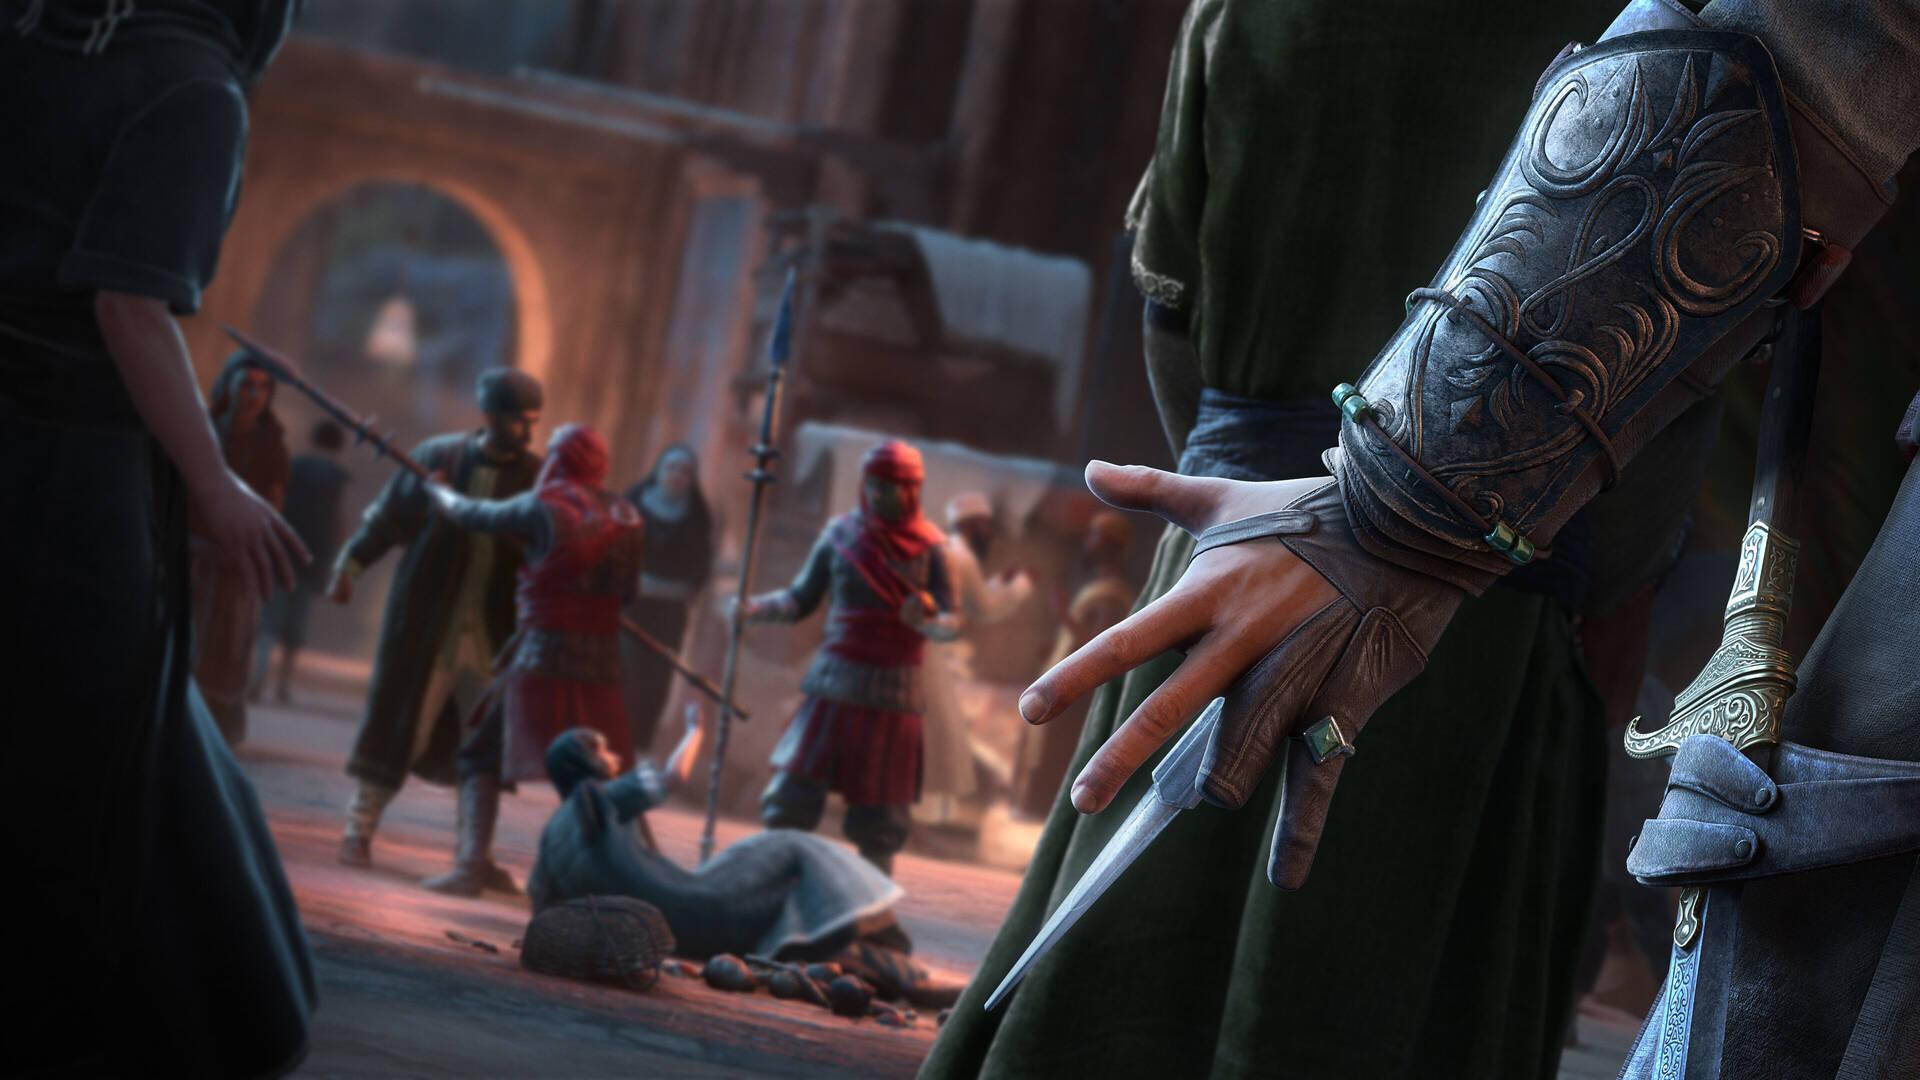 Requisitos de Assassin's Creed Mirage para jugar en PC